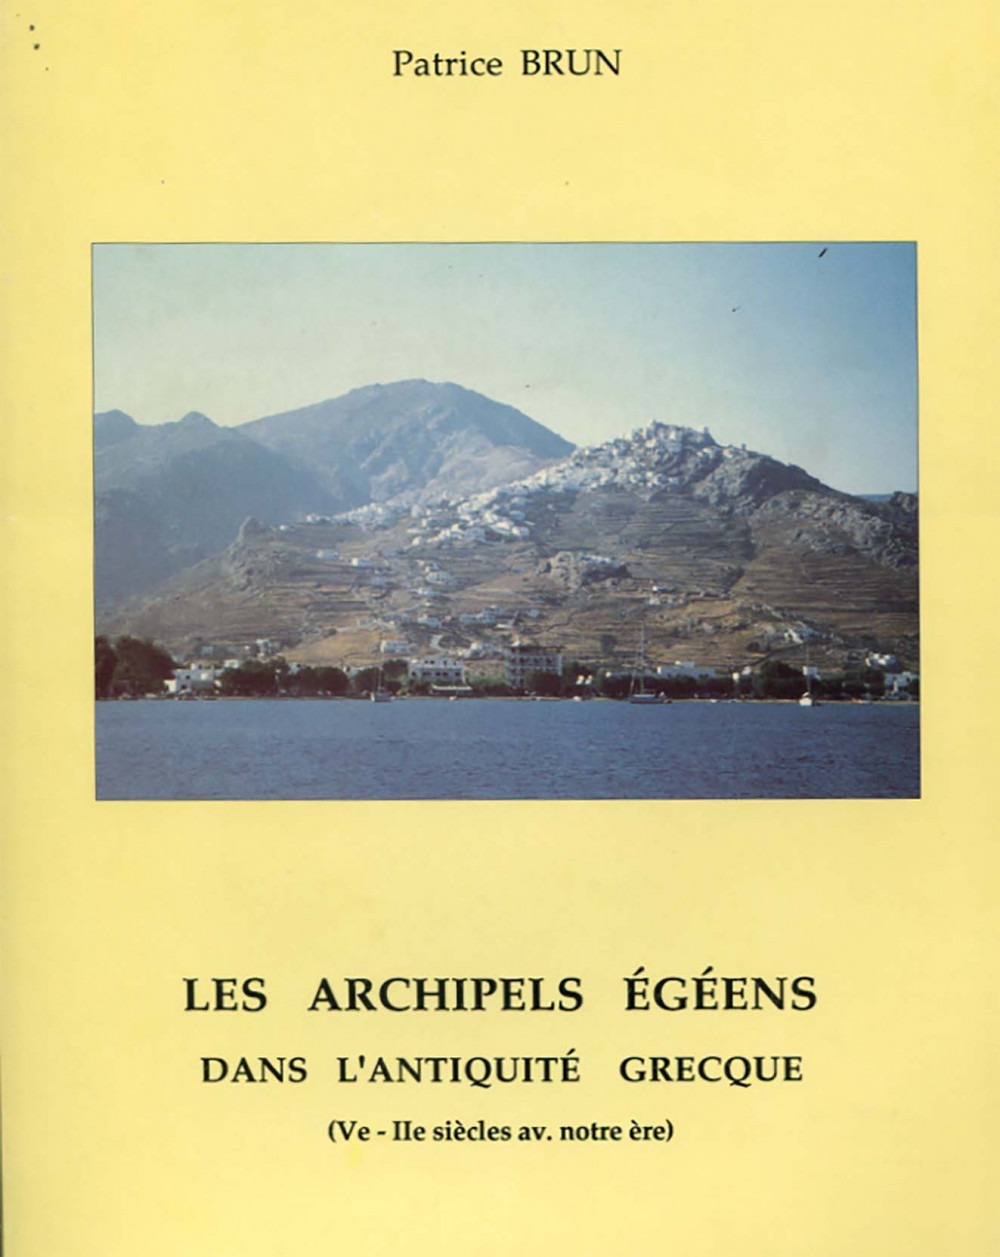 Les archipels égéens dans l'Antiquité grecque